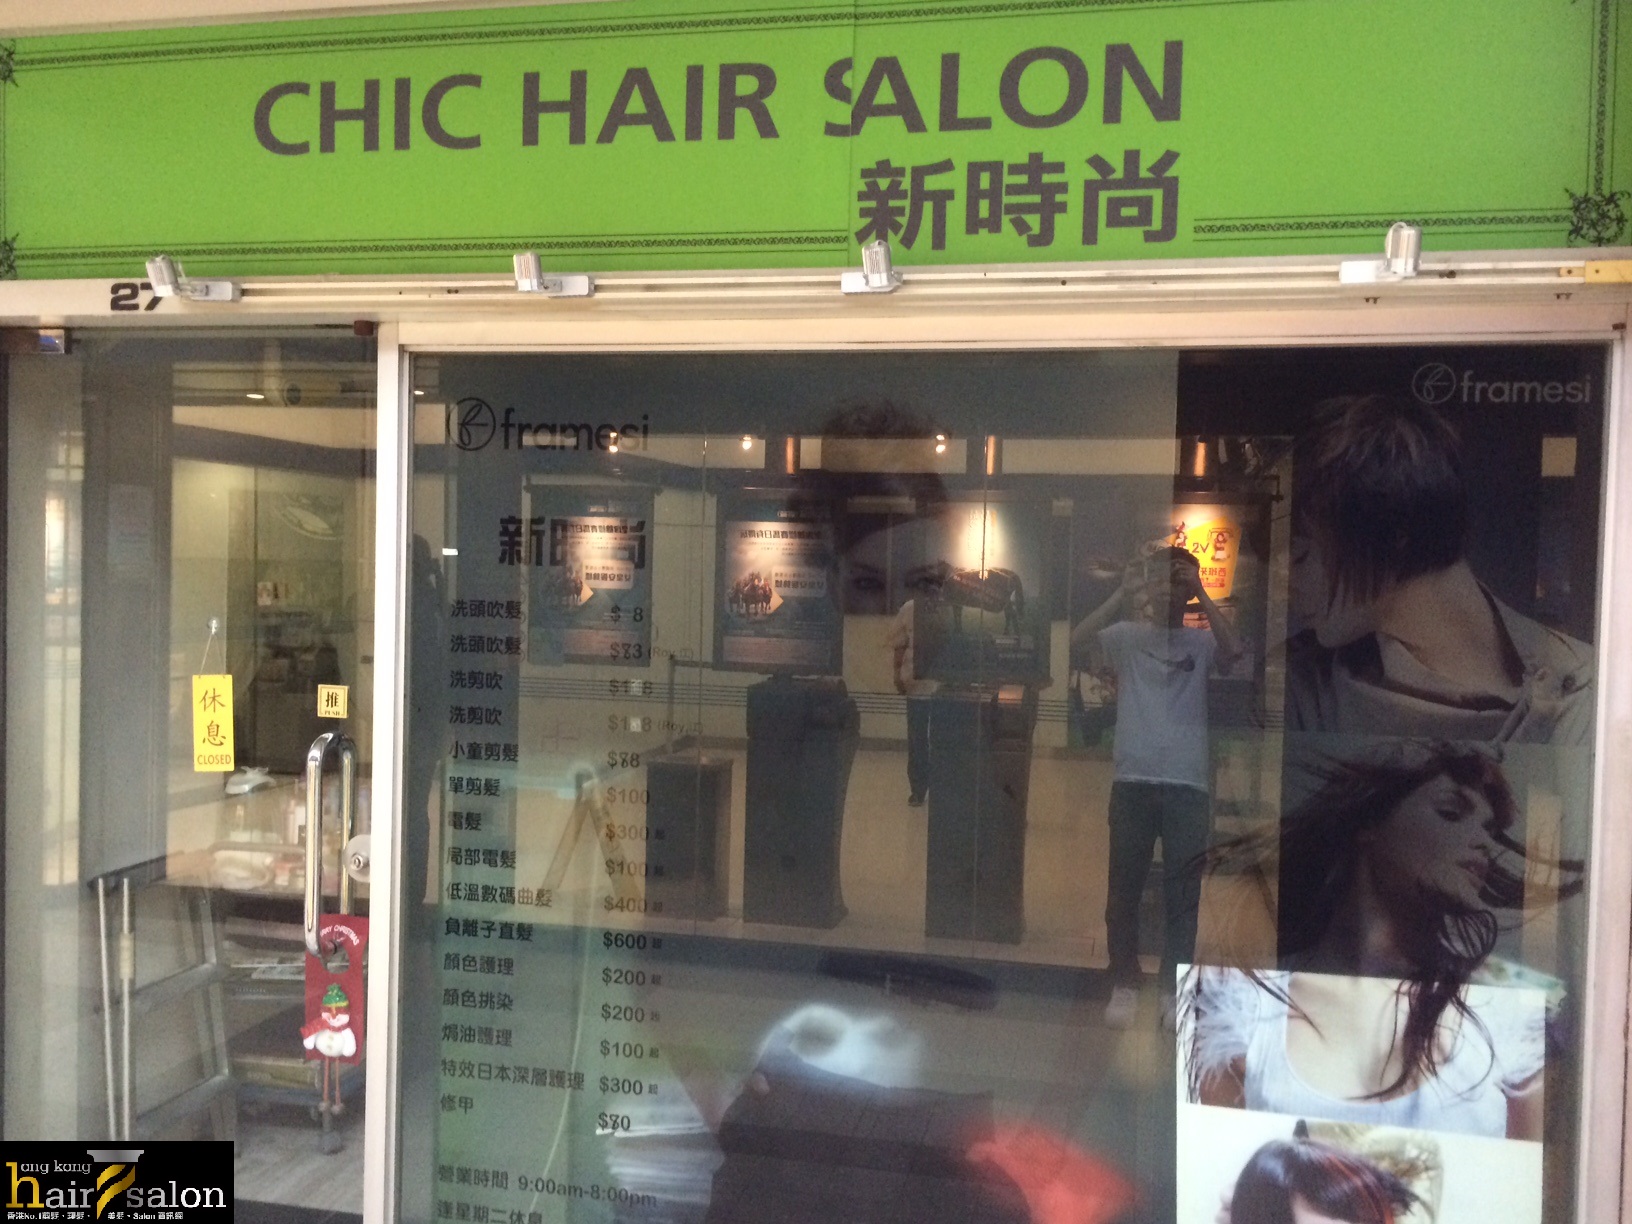 髮型屋: Chic Hair Salon